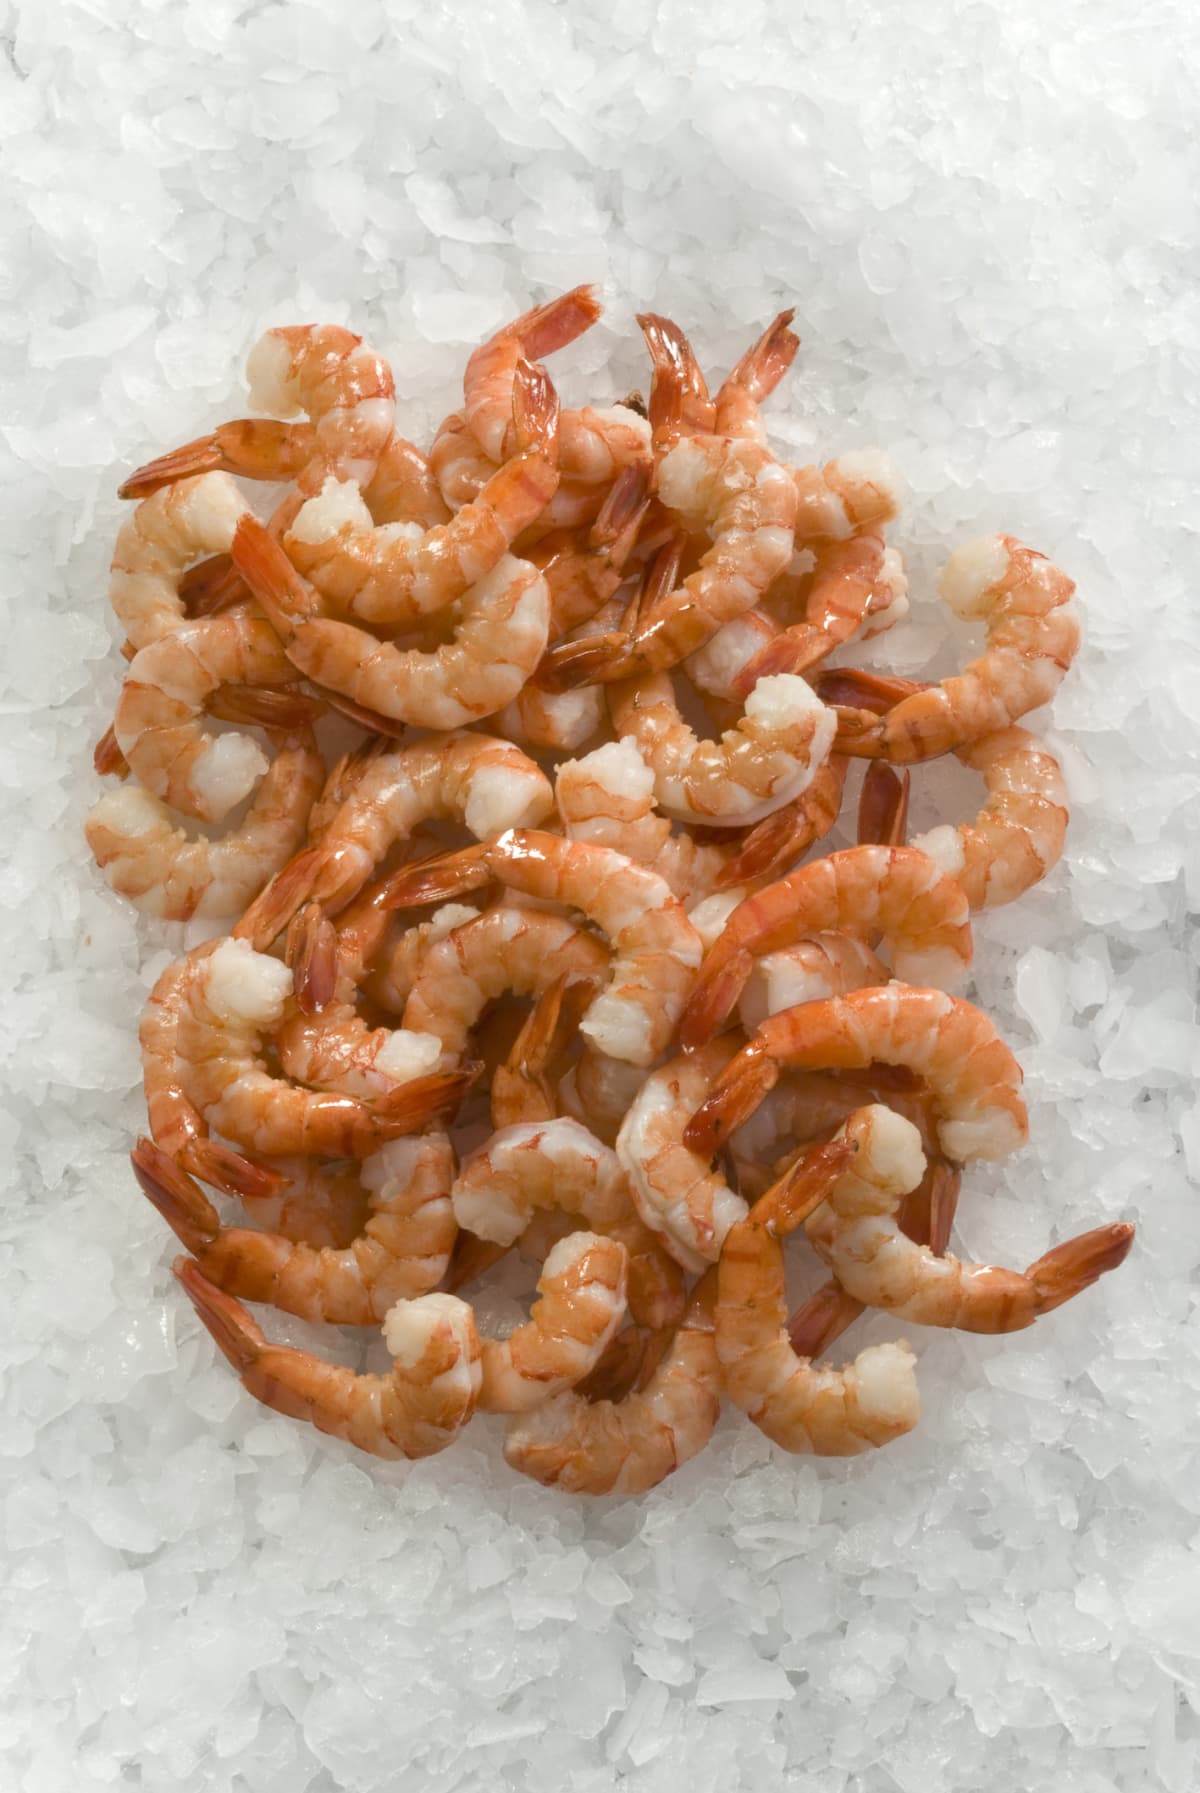 Pile of raw shrimp on ice